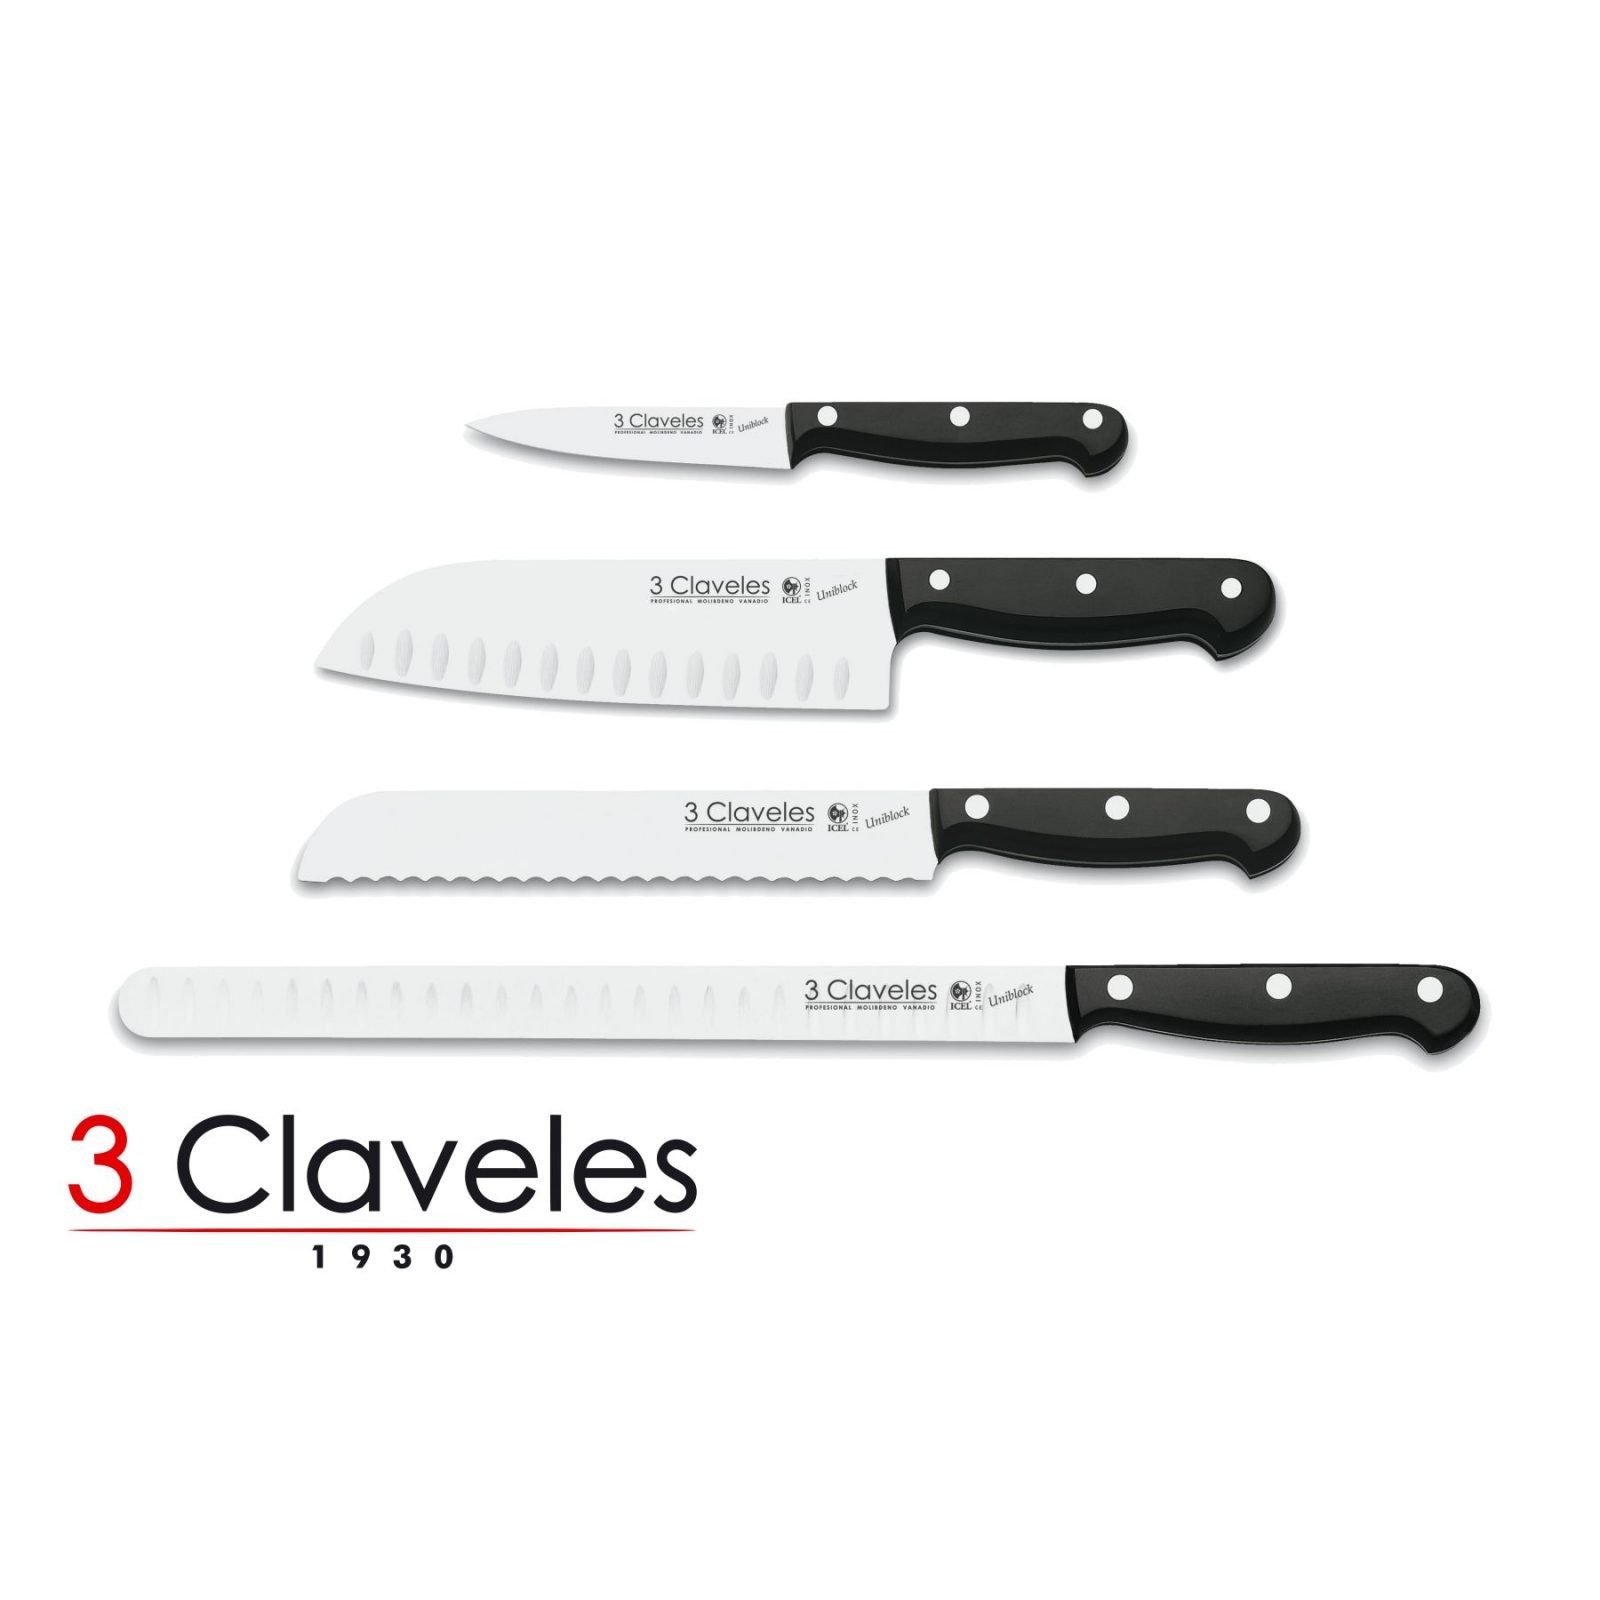 Comprar juego de cuchillos serie Uniblock de 3 Claveles